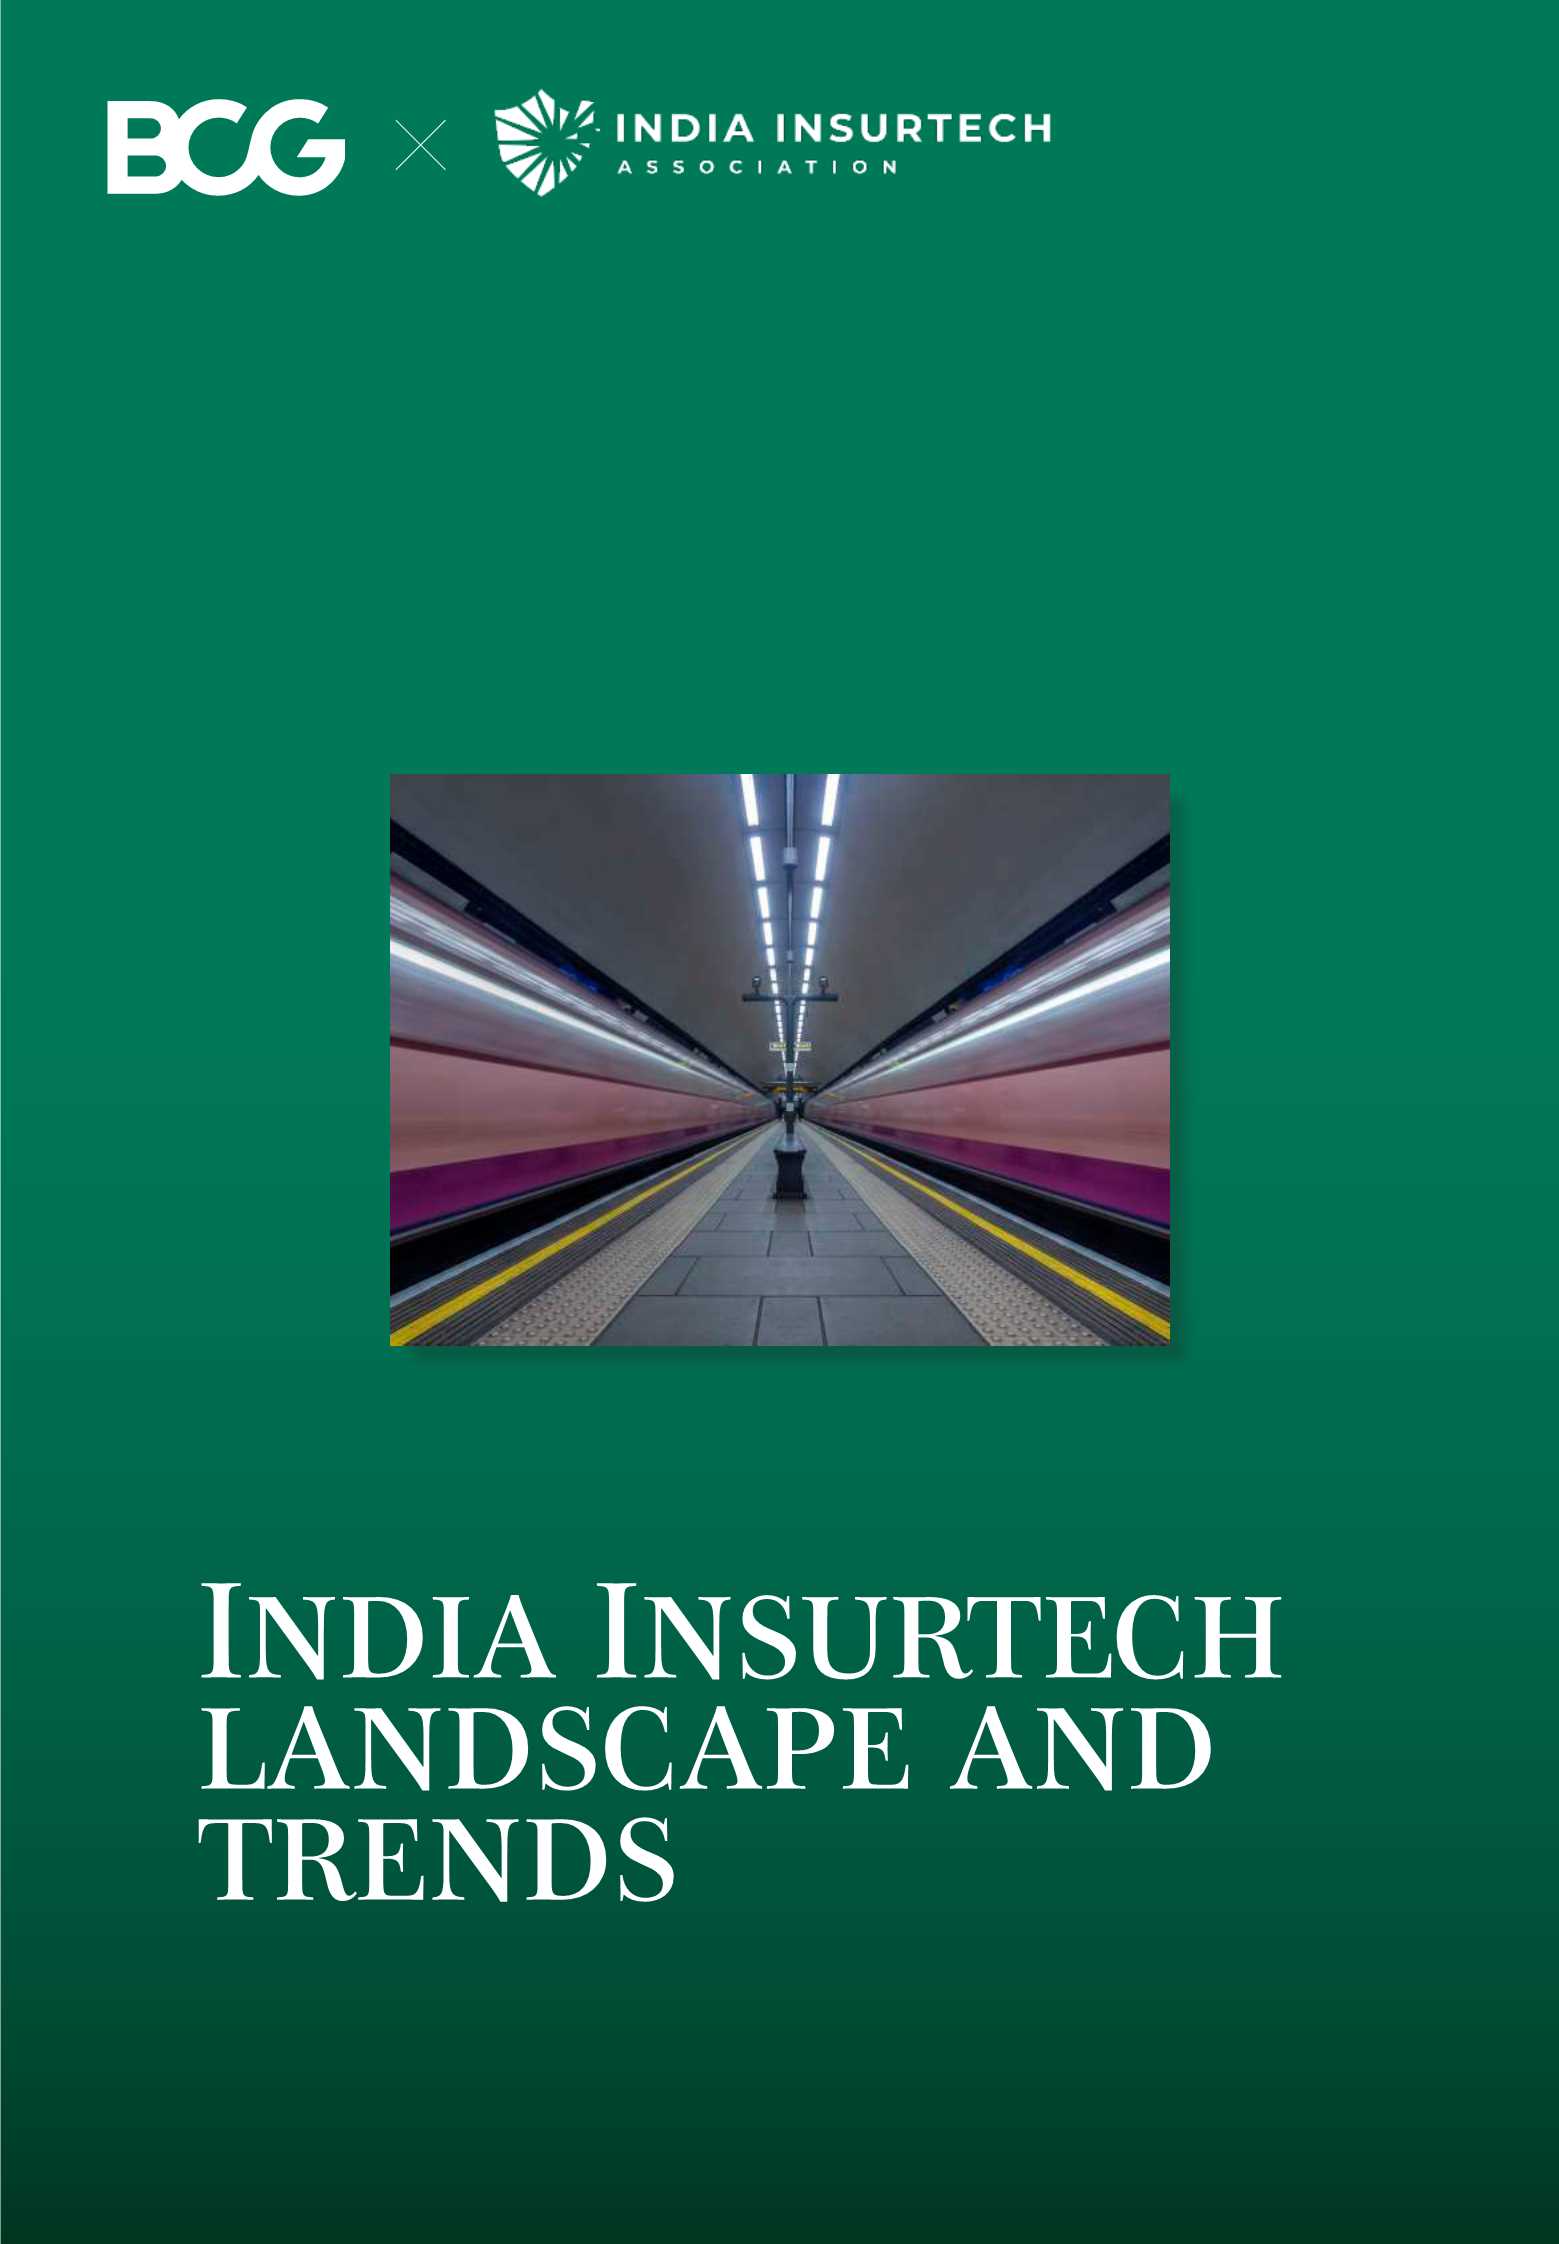 BCG&印度观察-印度保险科技景观和趋势报告（英文）-2021.06-40页